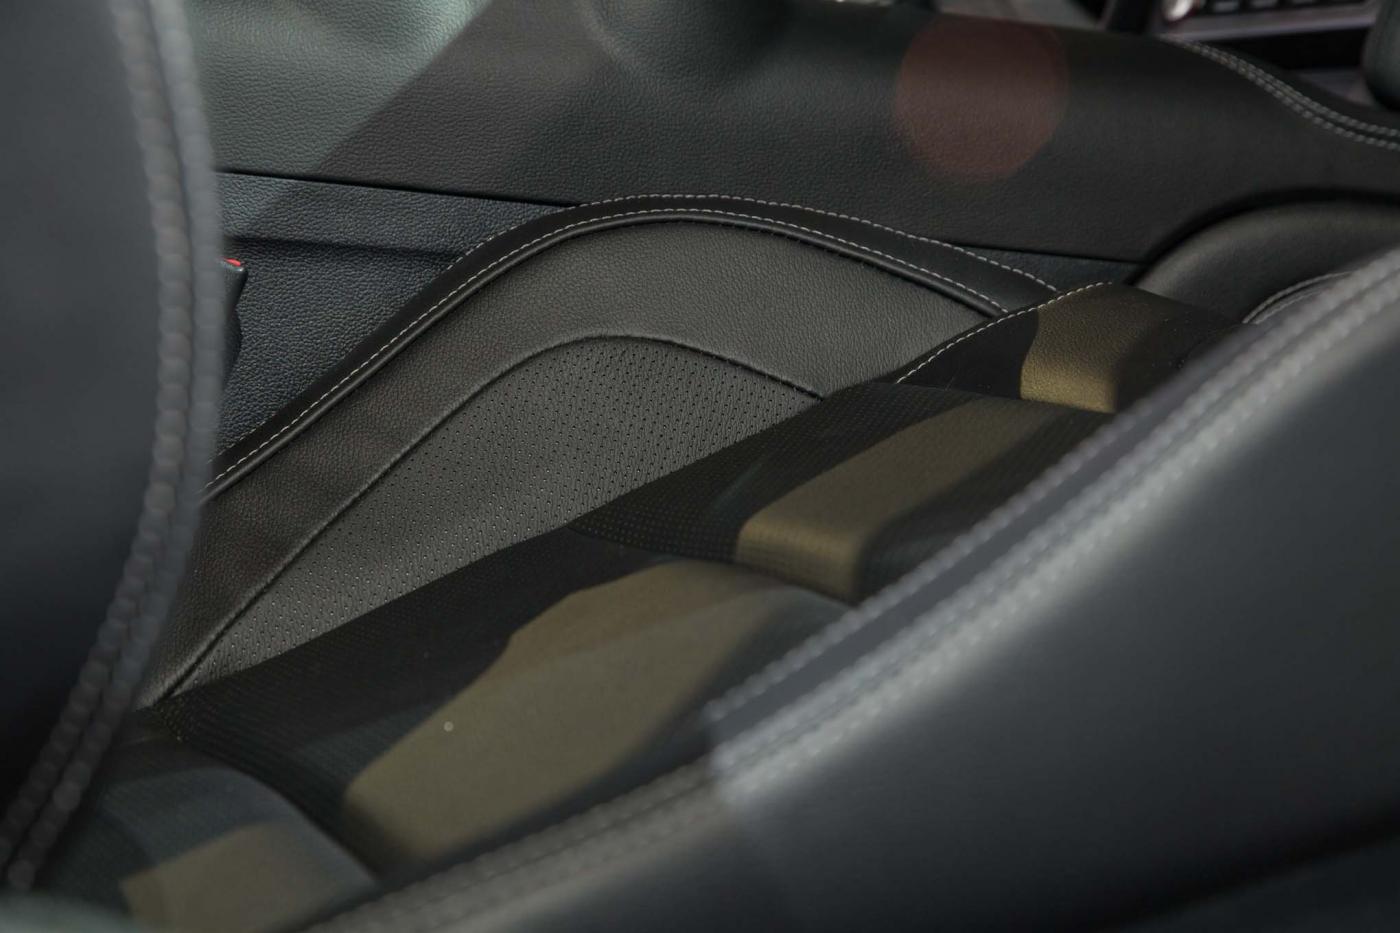 2018-Mustang-Interior-11.jpg